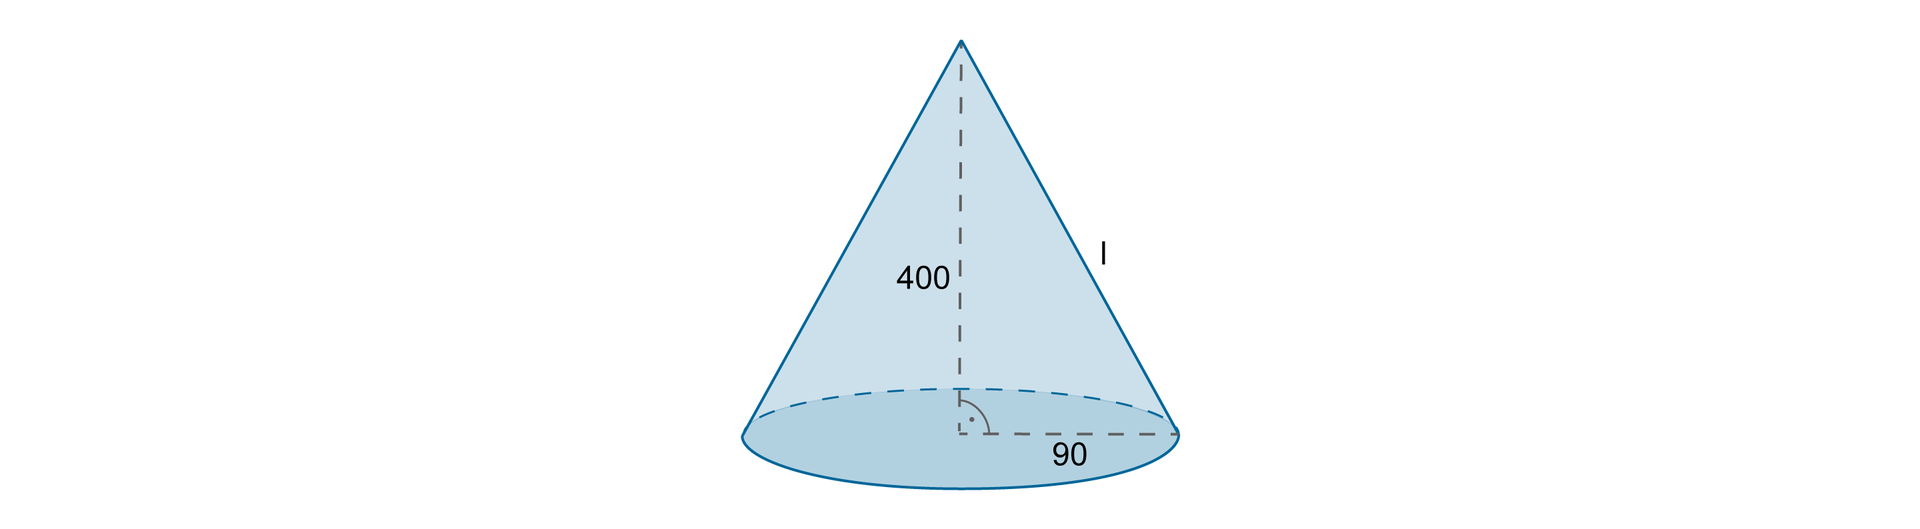 Rysunek stożka z poprowadzoną wysokością równą 400 oraz promieniem podstawy długości 90.